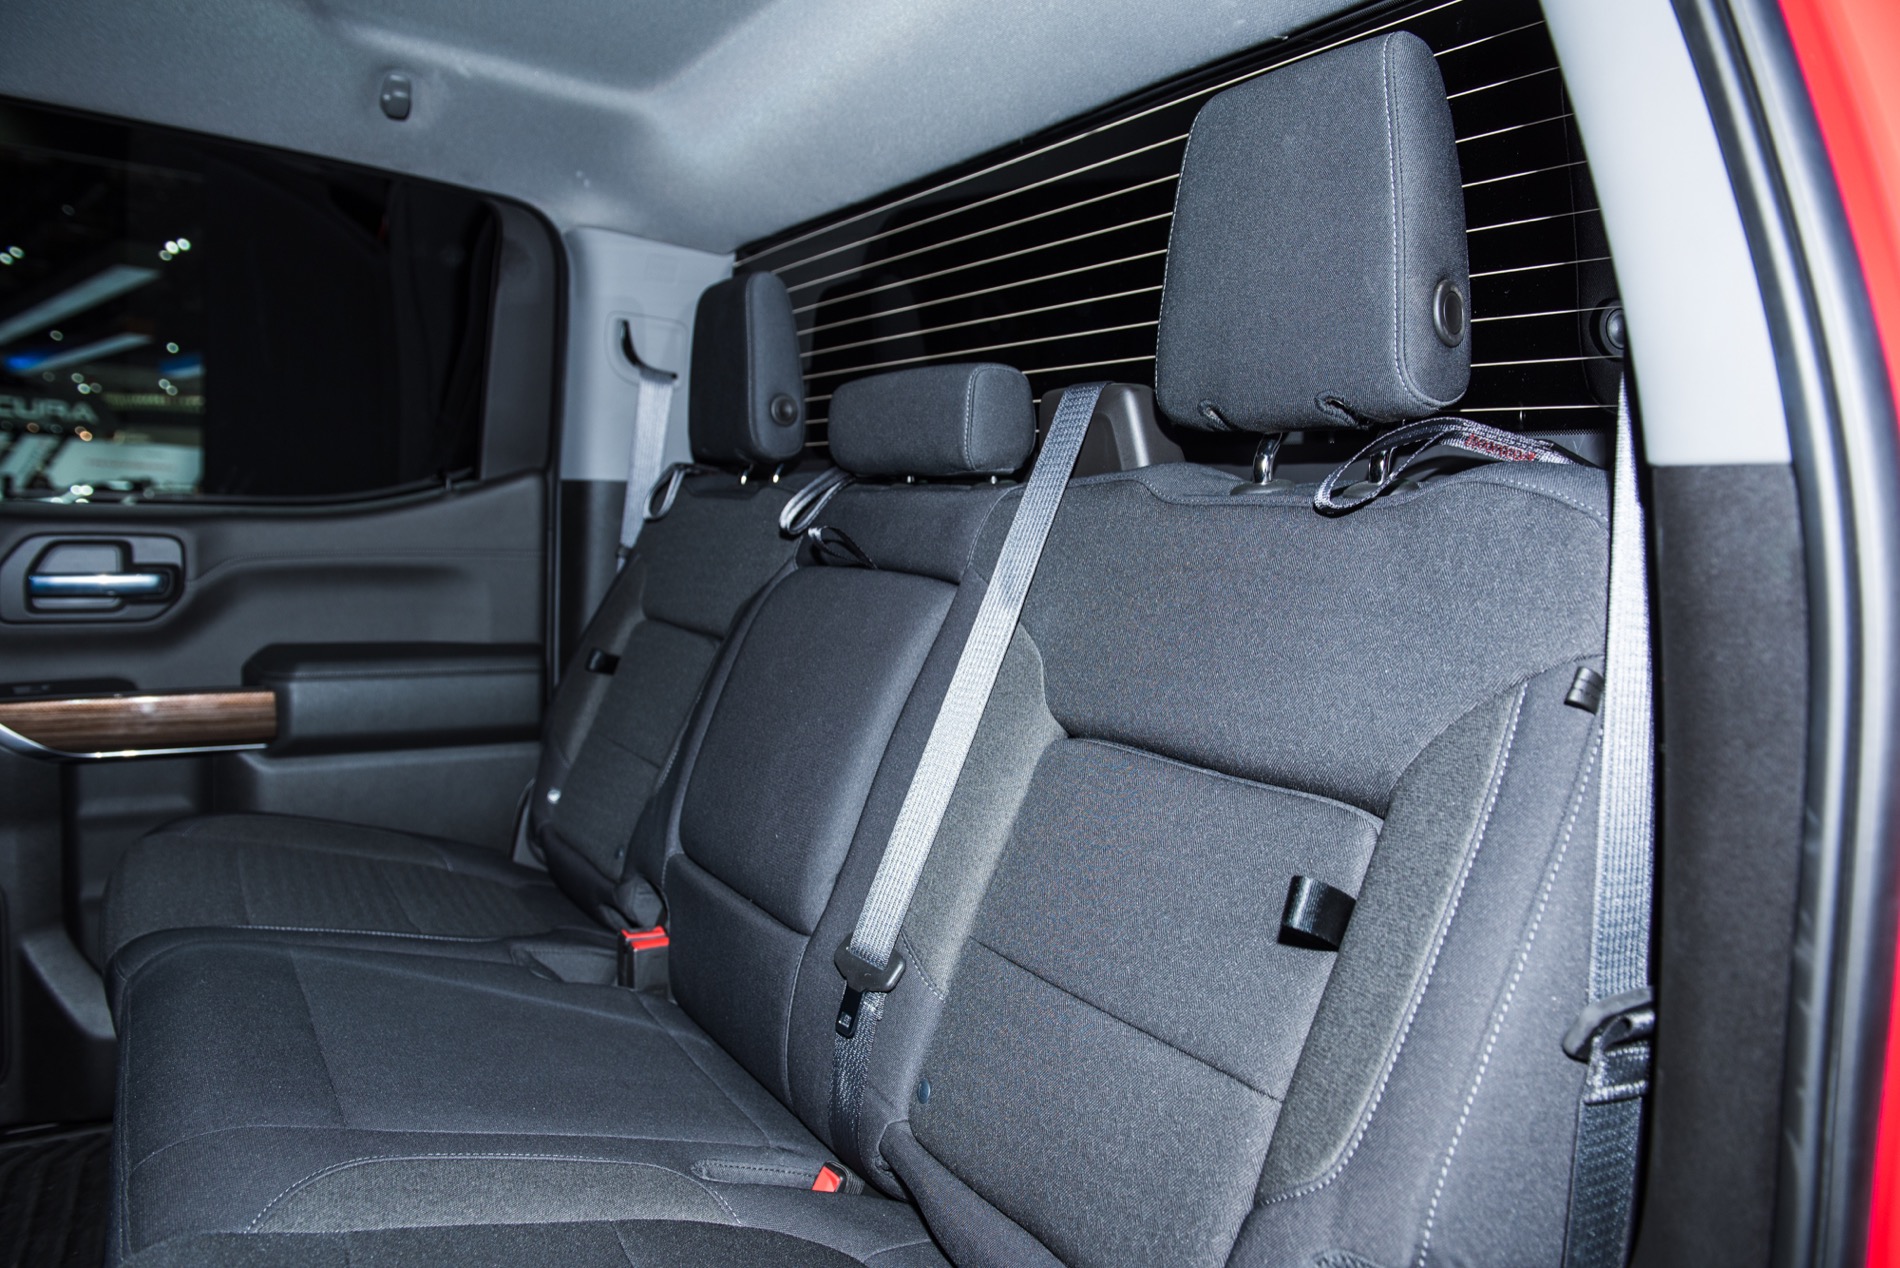 2020 Chevy Silverado Under Seat Storage - Jeepcarusa